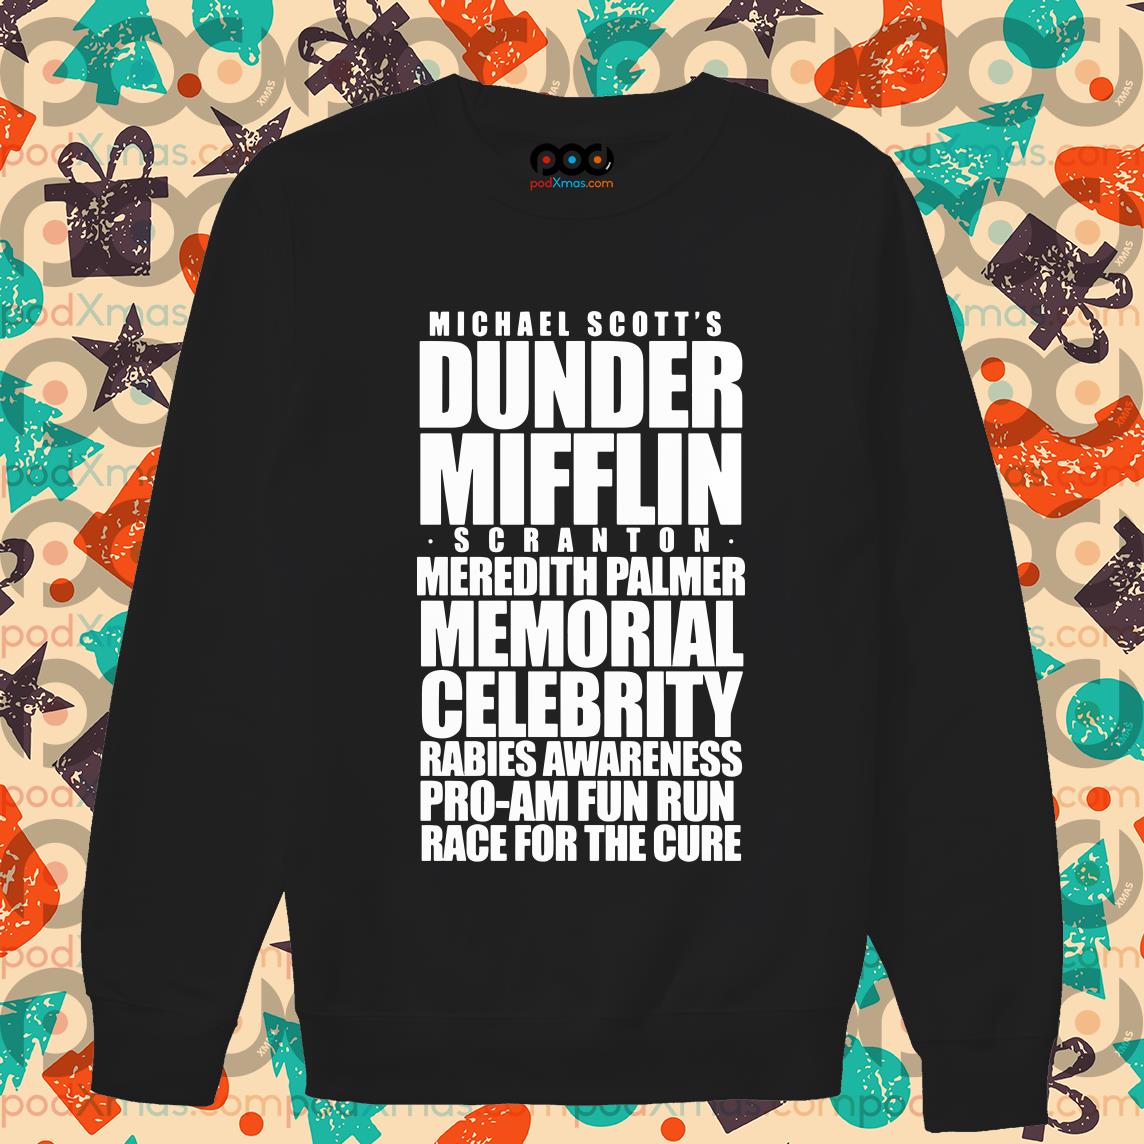 Dunder Mifflin T-shirt the Office T-shirt -  Ireland